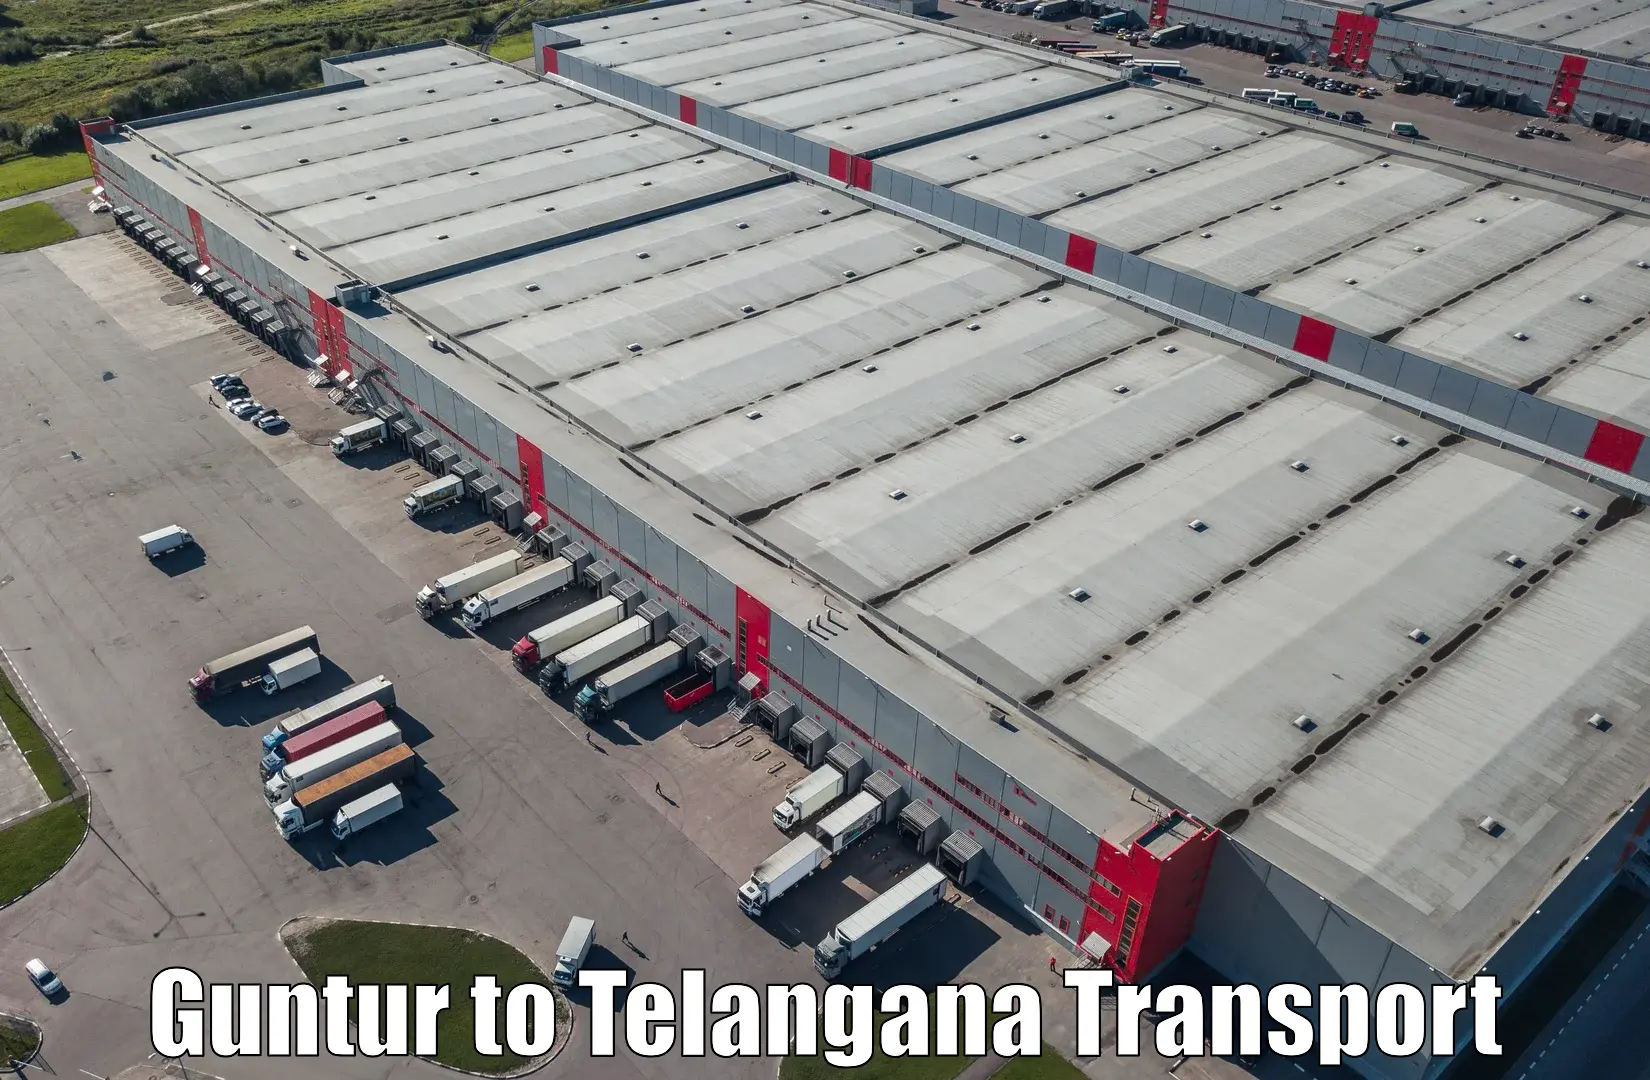 Lorry transport service Guntur to Pathipaka